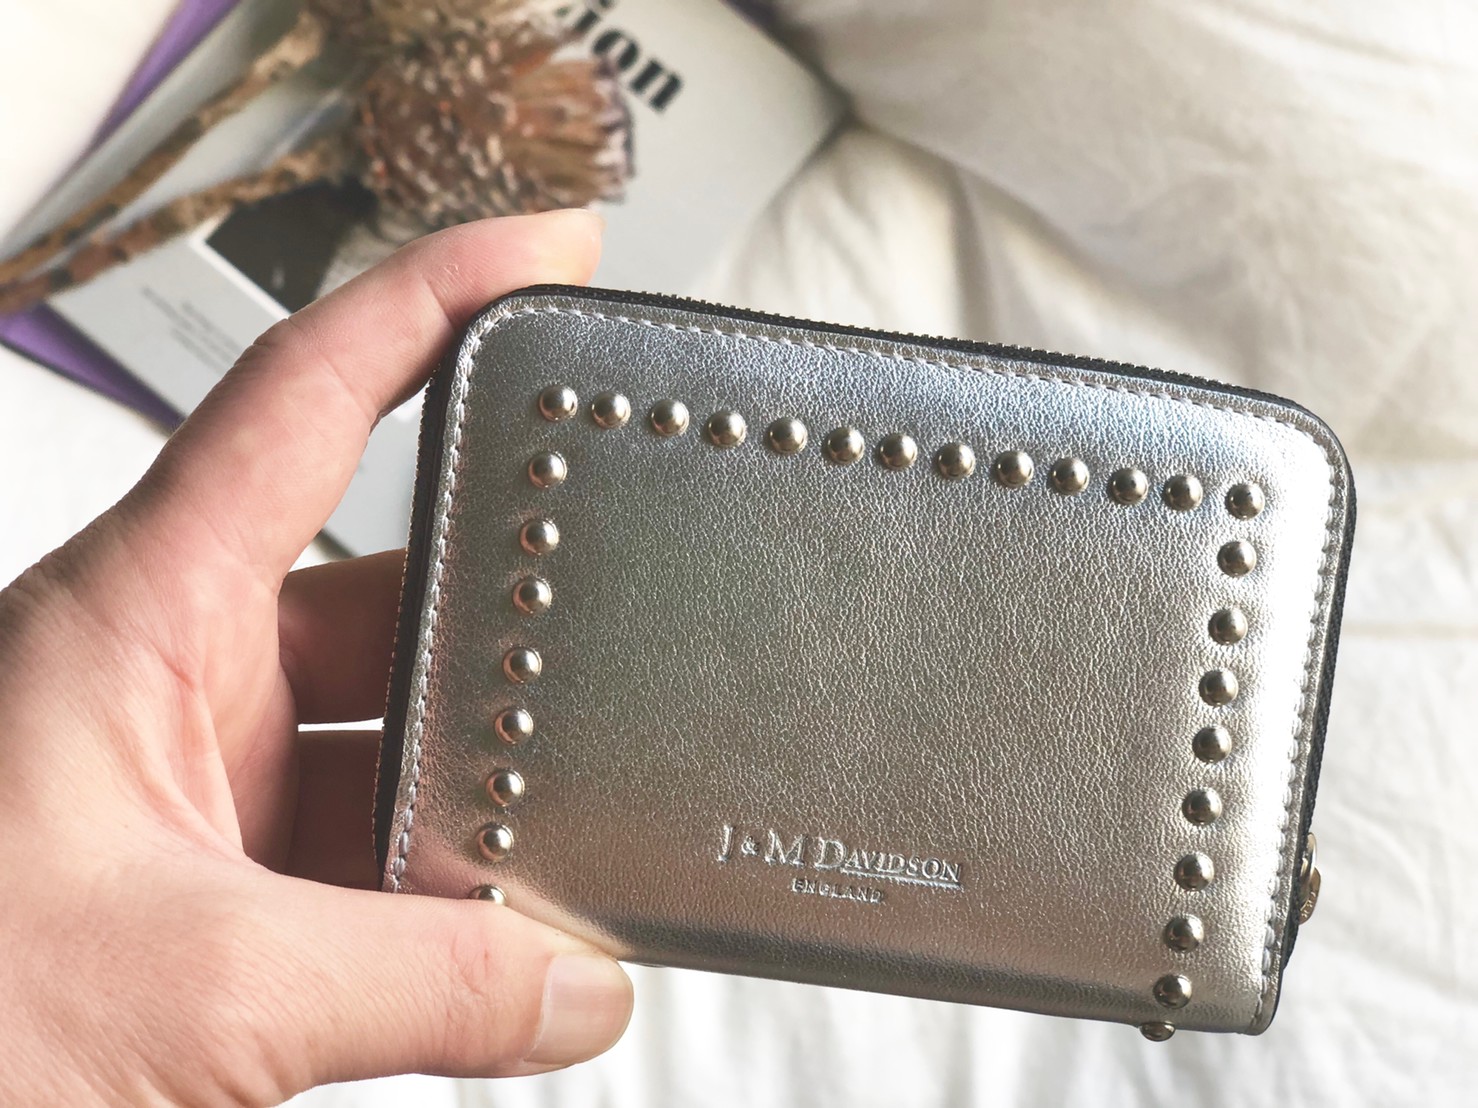 【新品未使用】J&M DAVIDSON 財布ジップウォレット